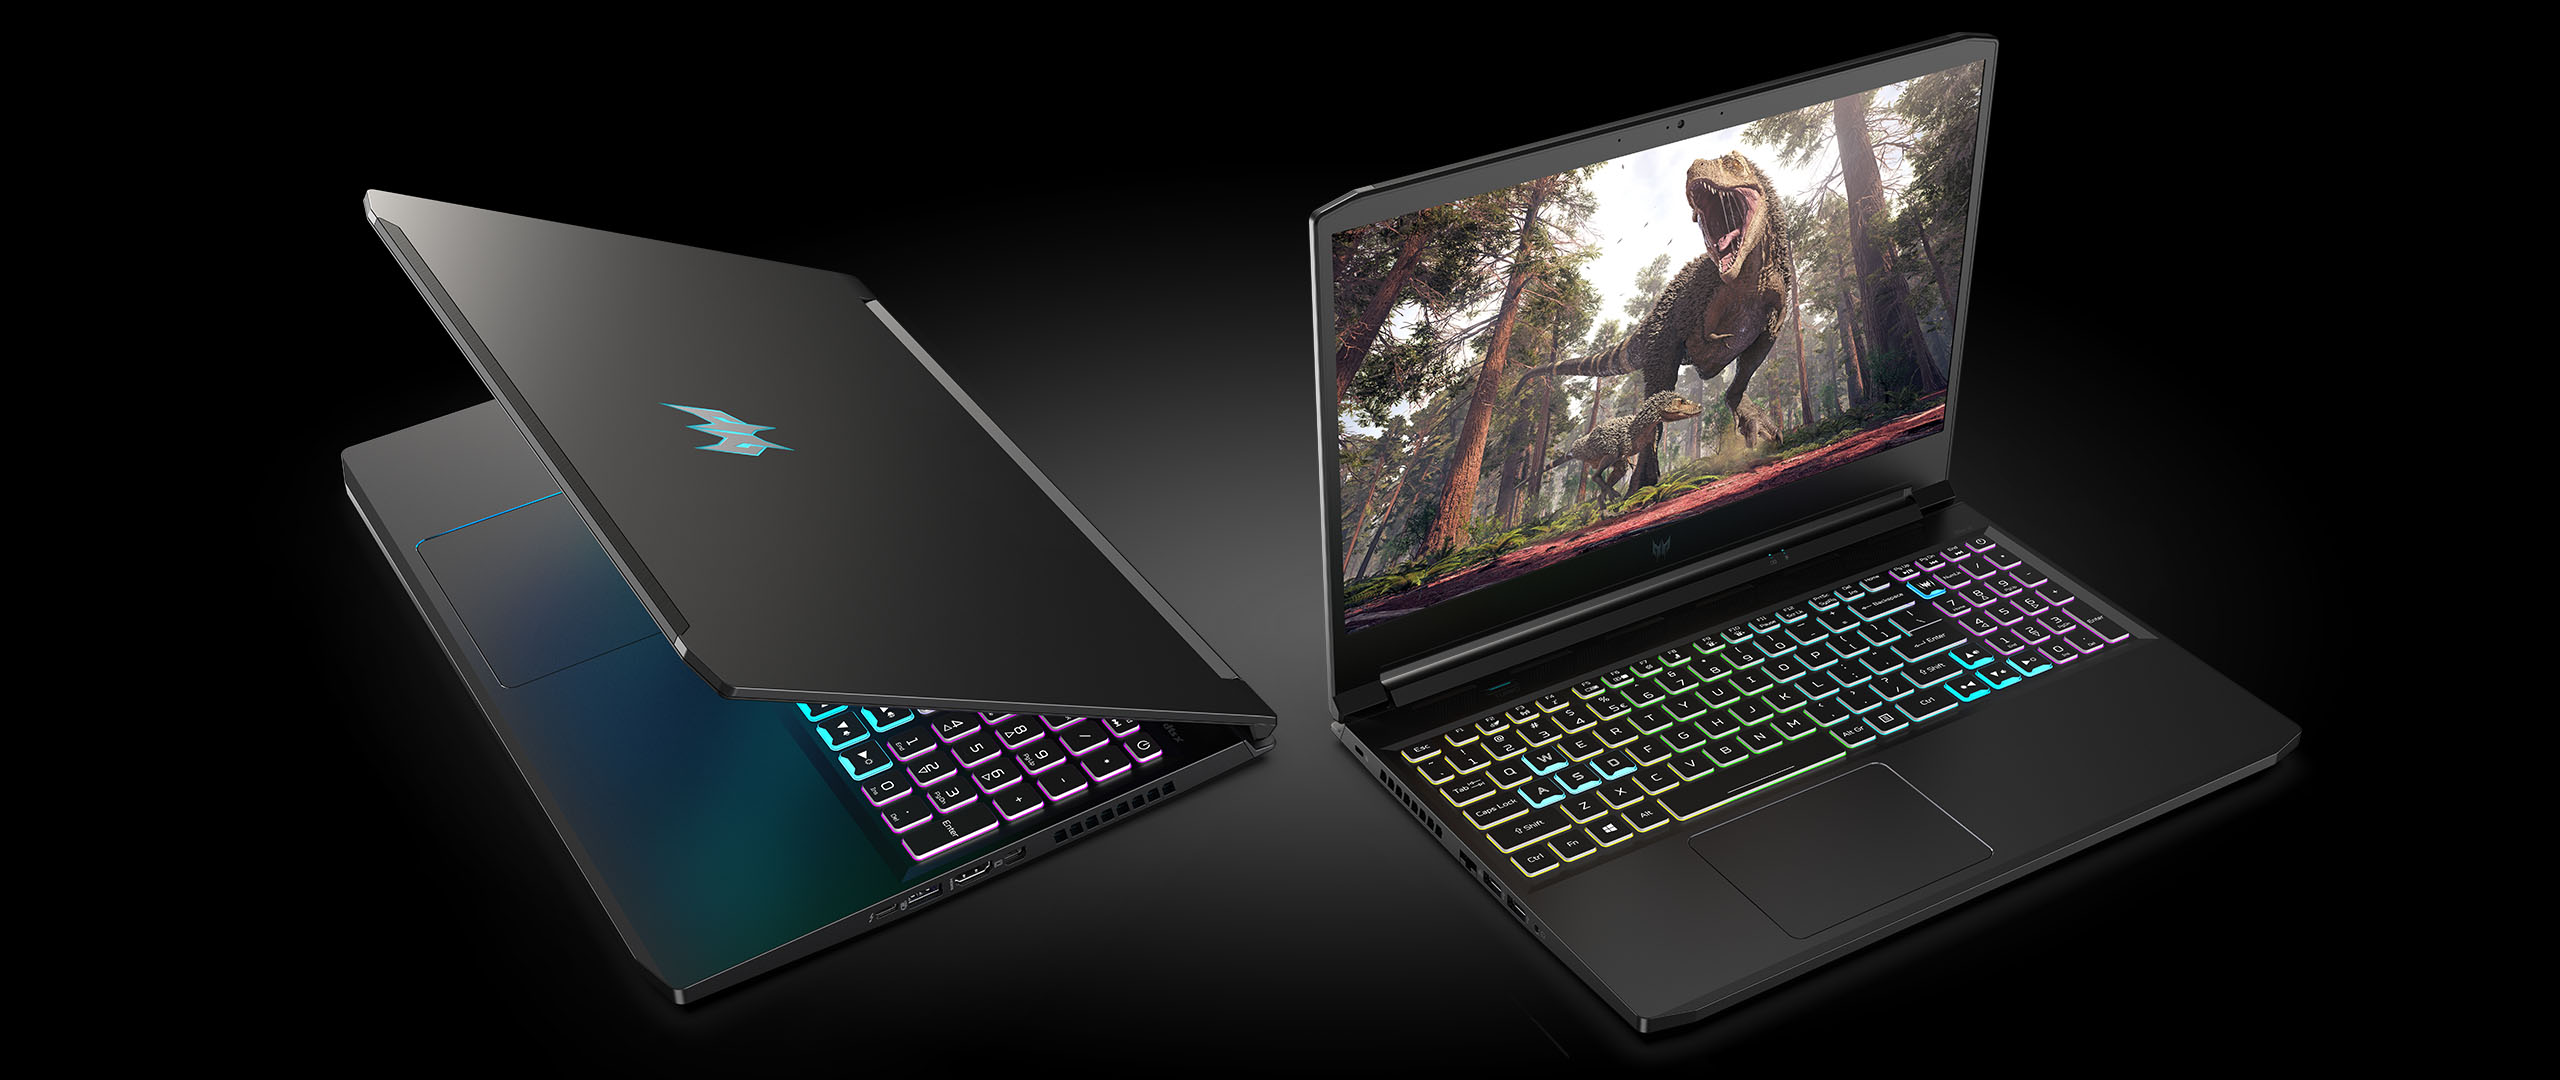 Bộ đôi Laptop gaming Predator Triton 300 và Triton 500 SE giá chỉ từ 44 triệu